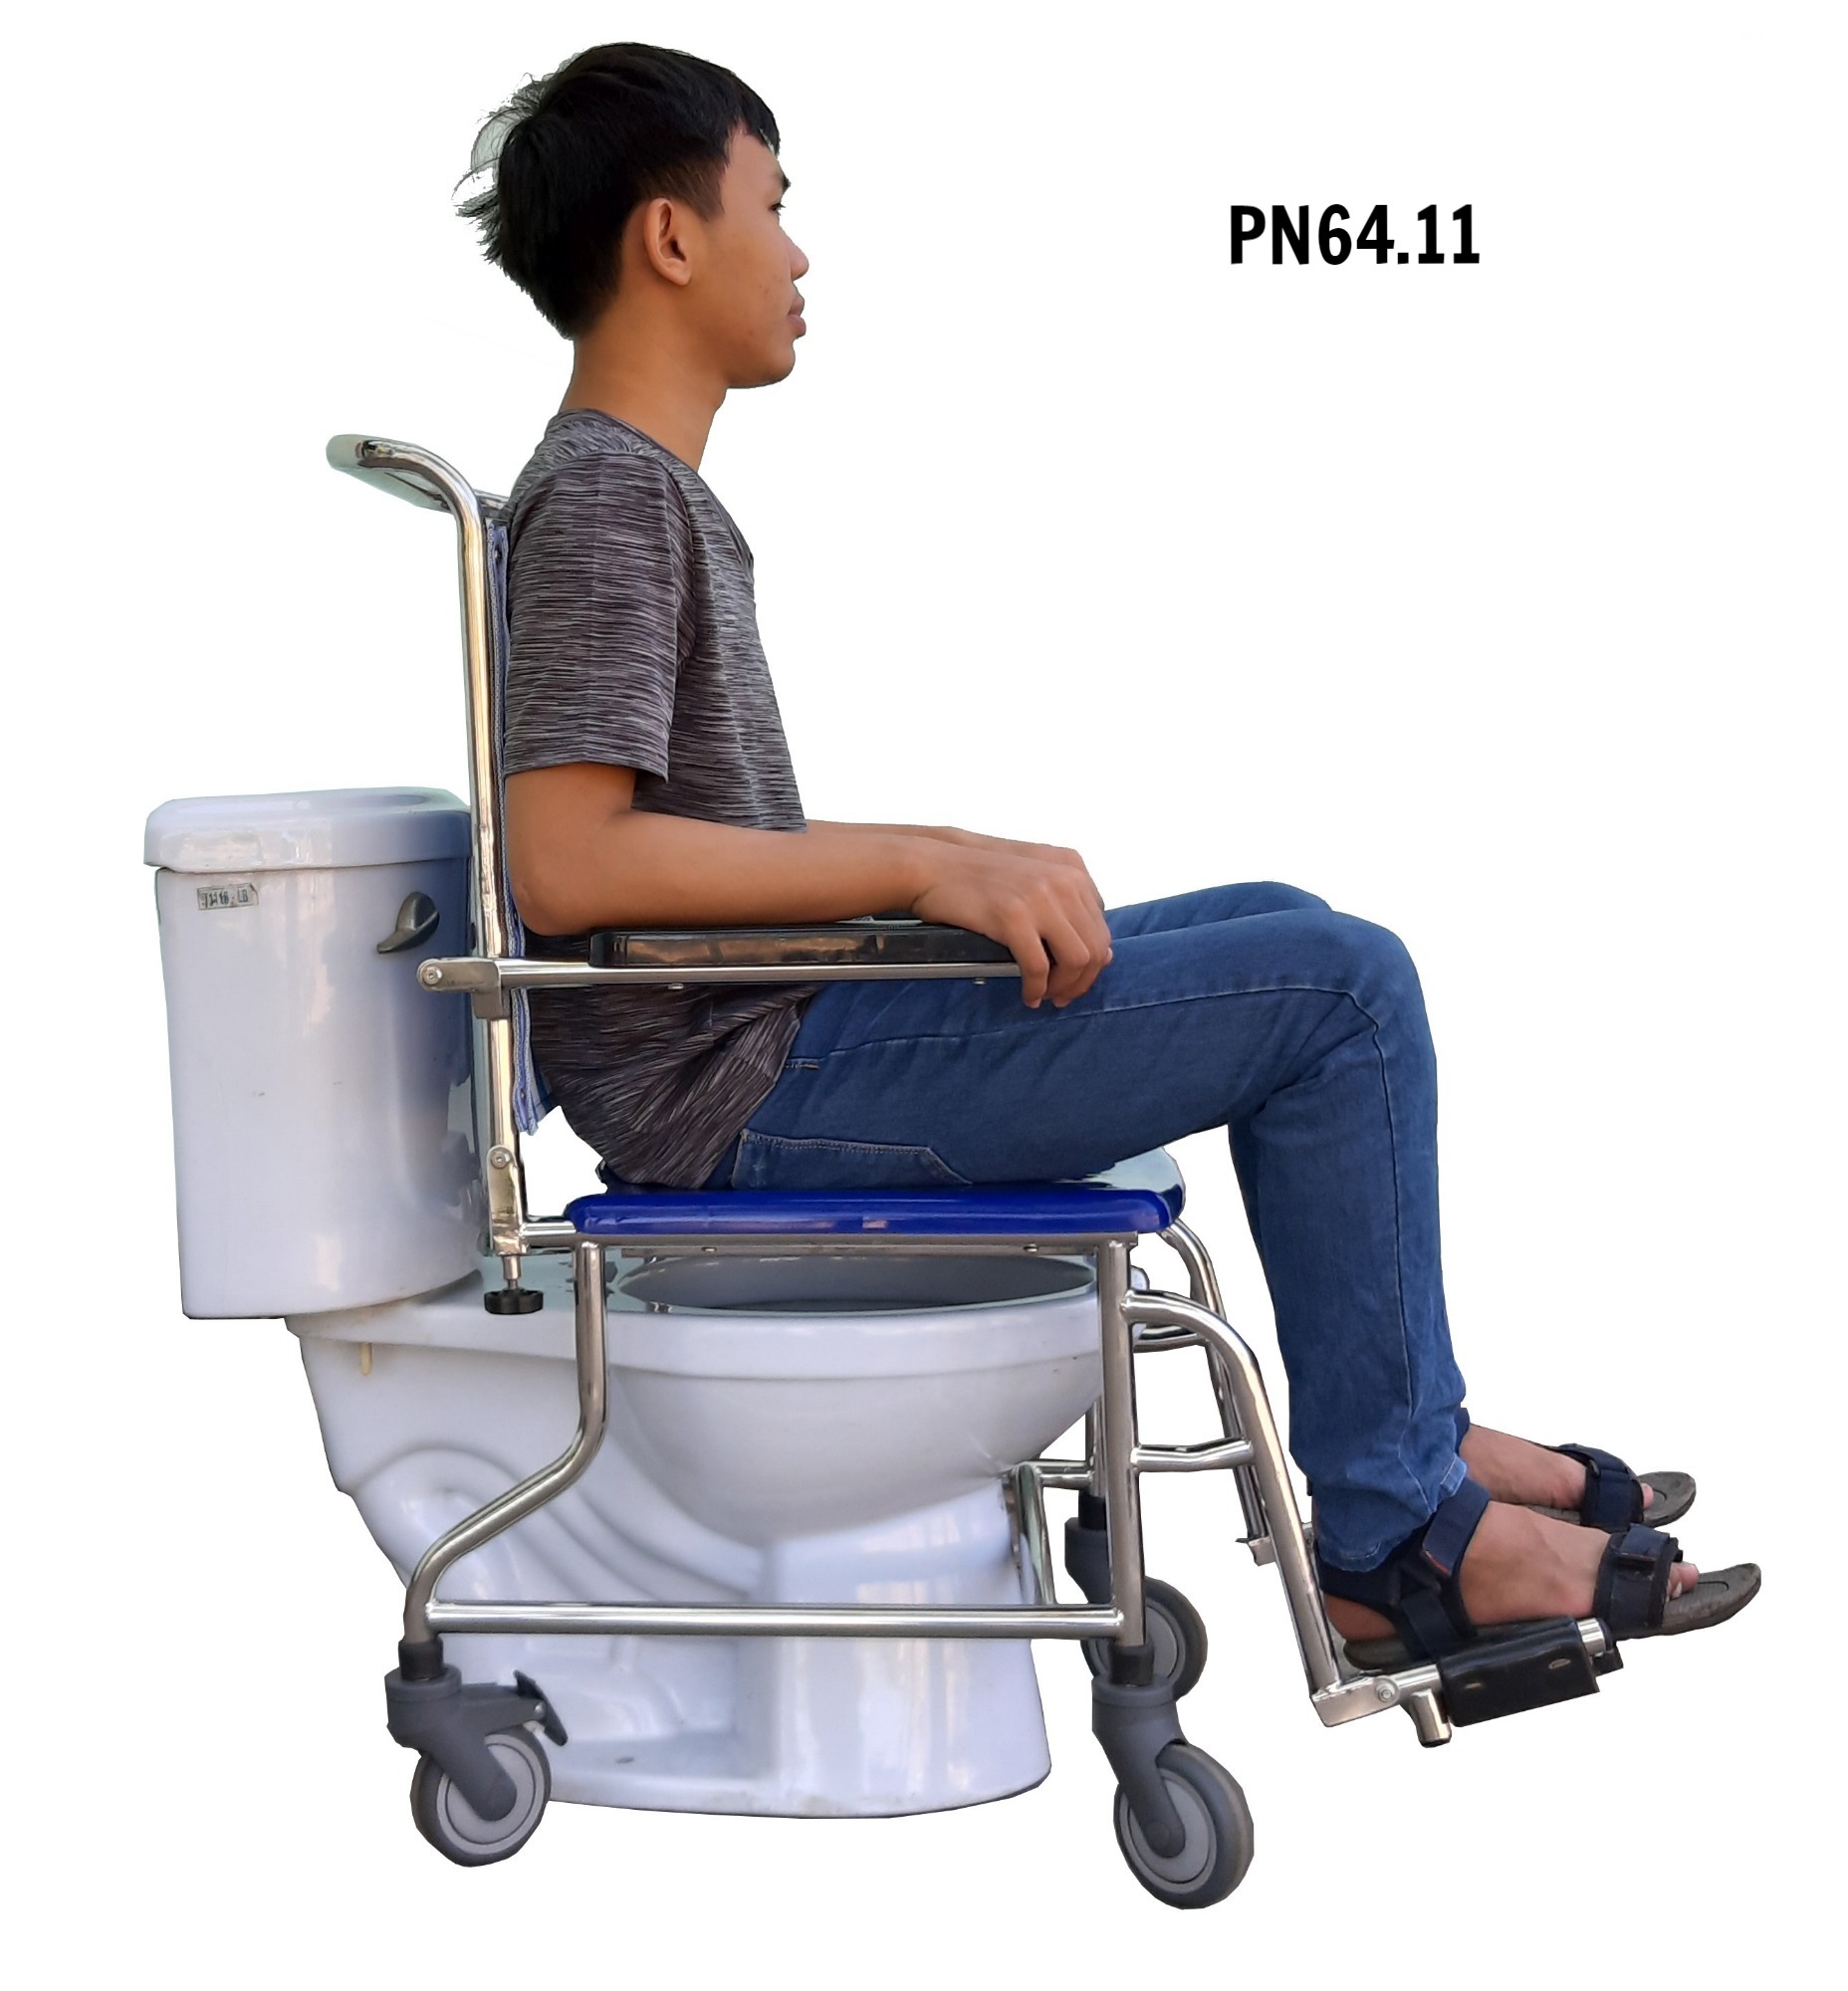 PN64.11 - Ghế vệ sinh có bánh xe (mẫu mới 2020)